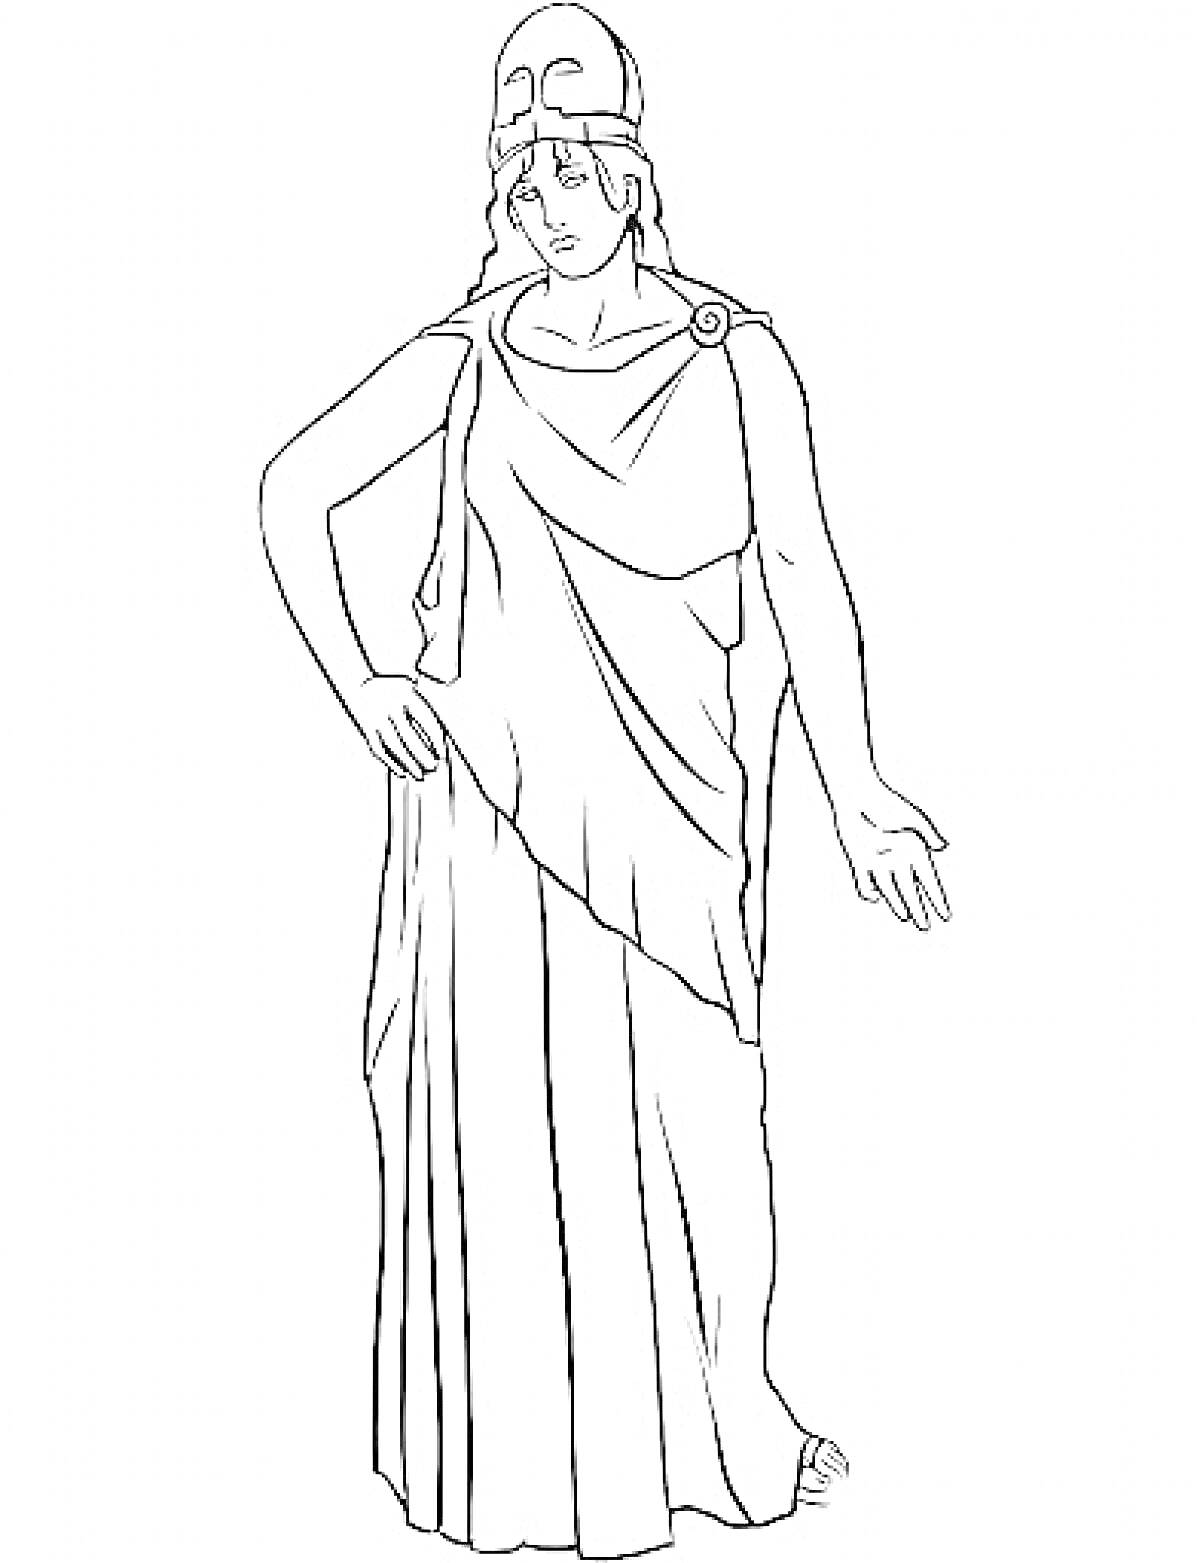 Раскраска Богиня Древней Греции в шлеме и хламиде